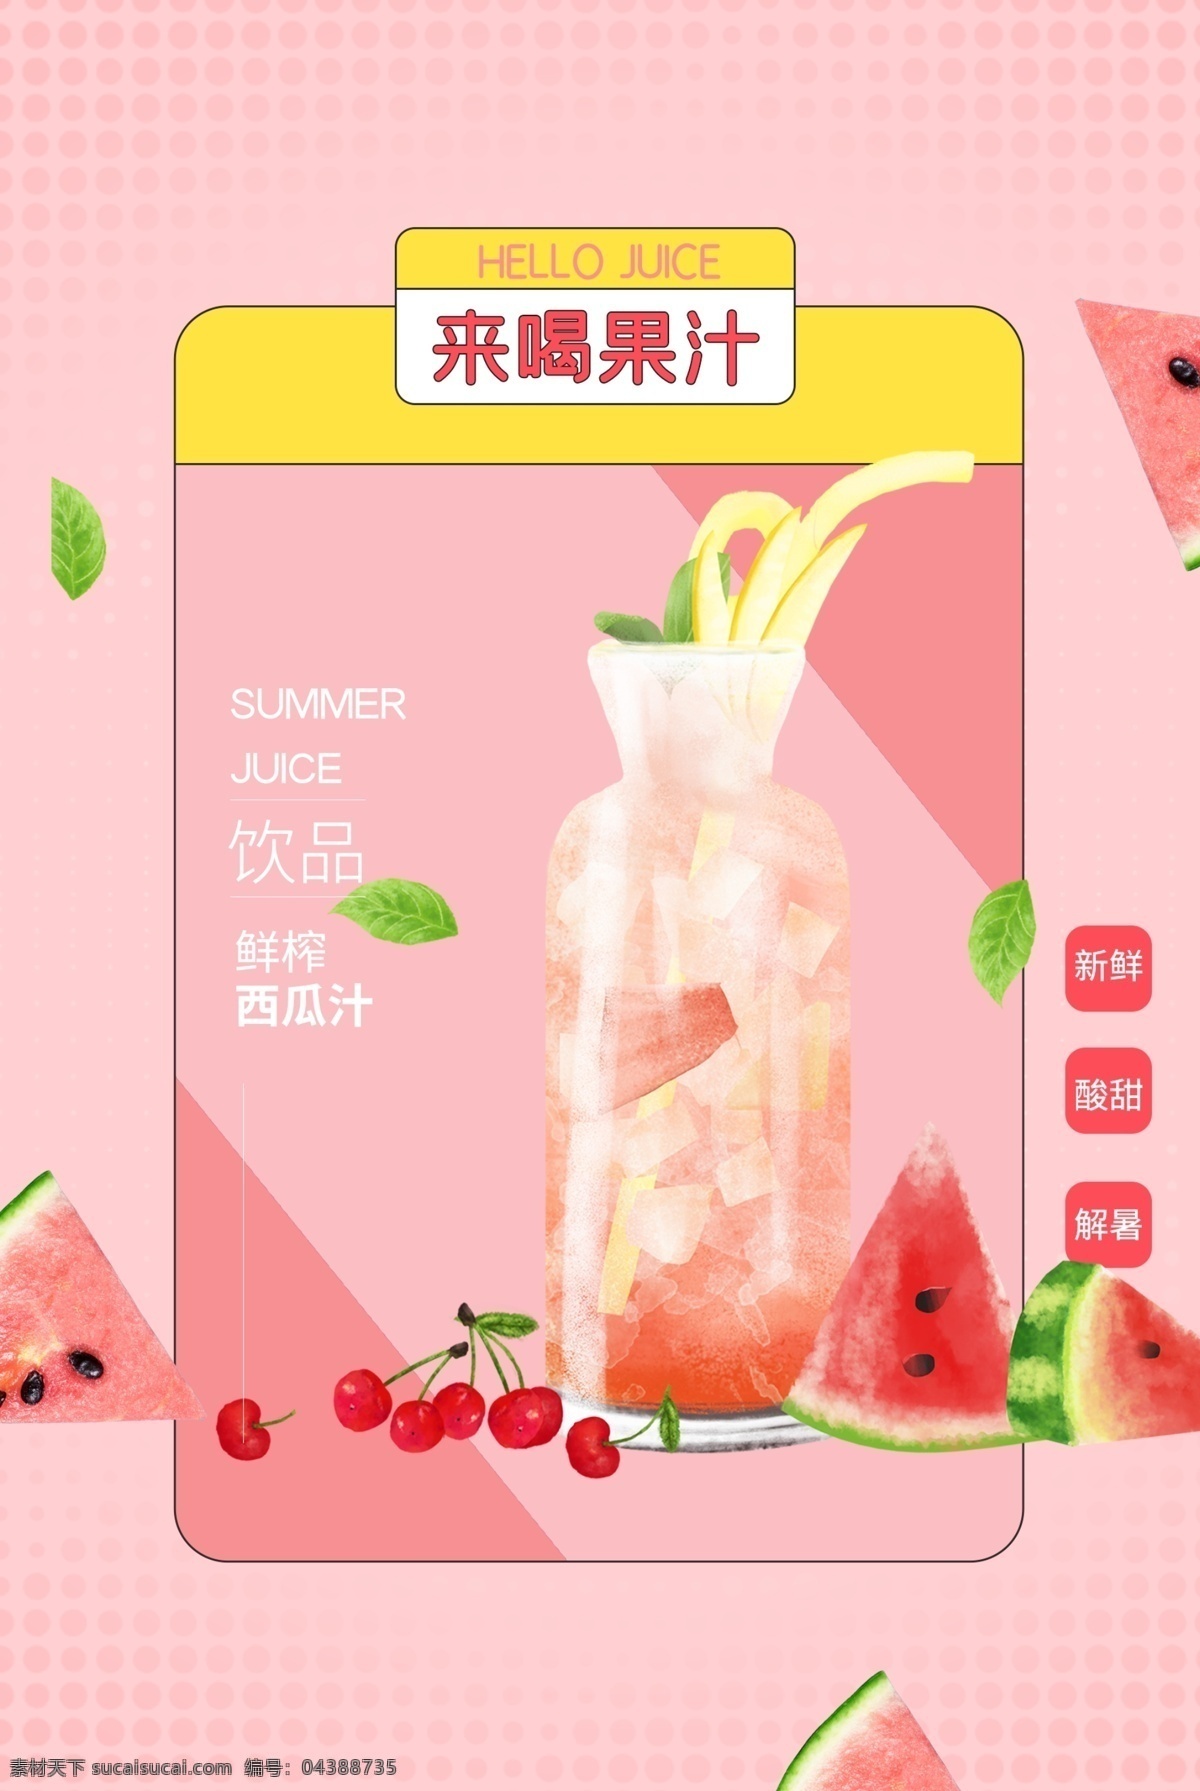 新鲜 果汁 饮品 活动 海报 素材图片 新鲜果汁 饮料 甜品 类